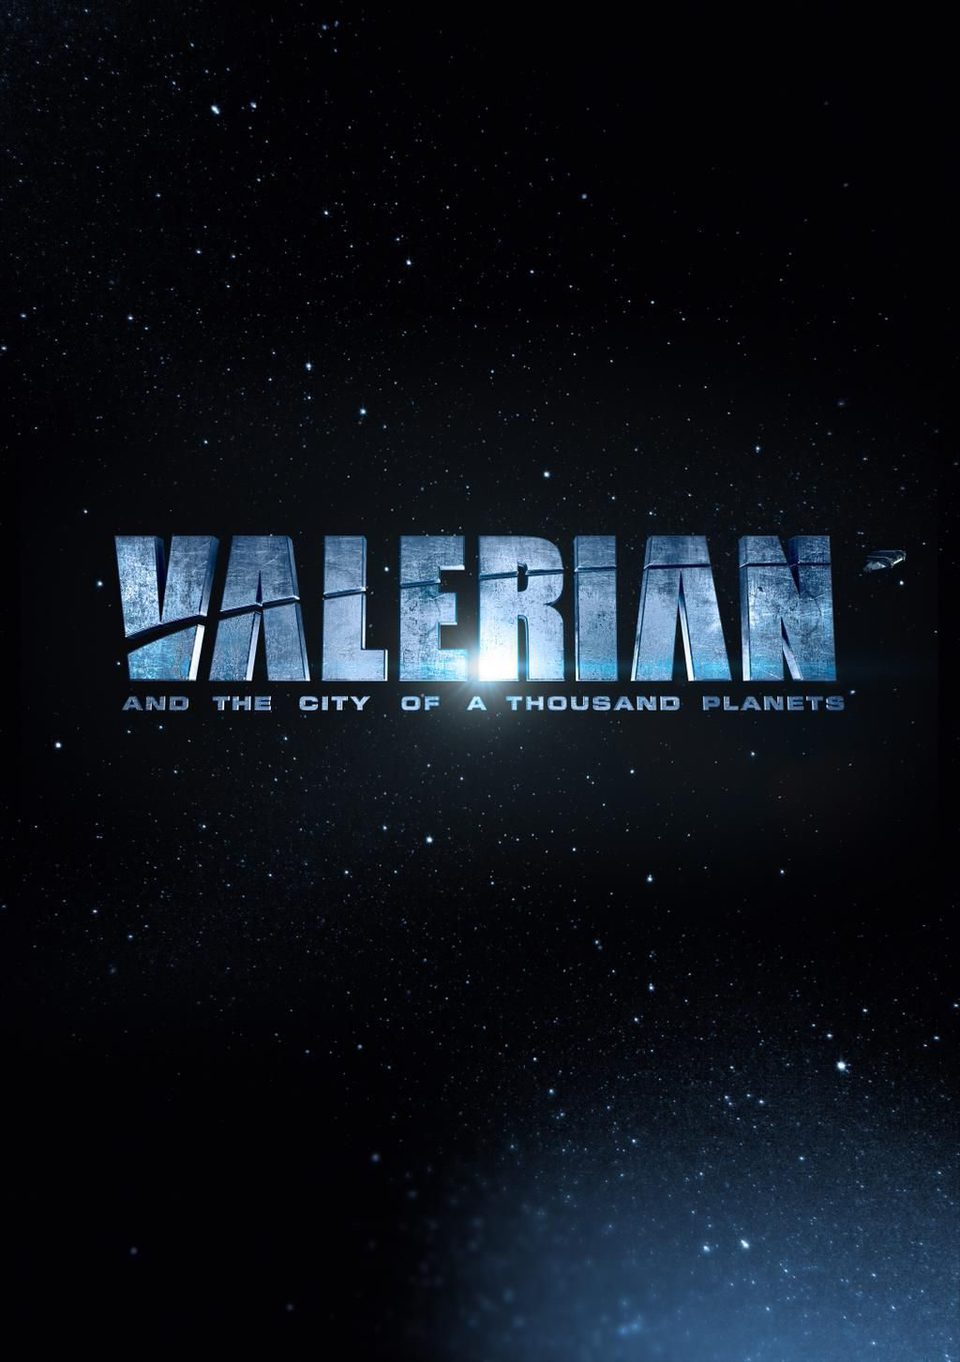 Cartel de Valerian y la ciudad de los mil planetas - Teaser logo